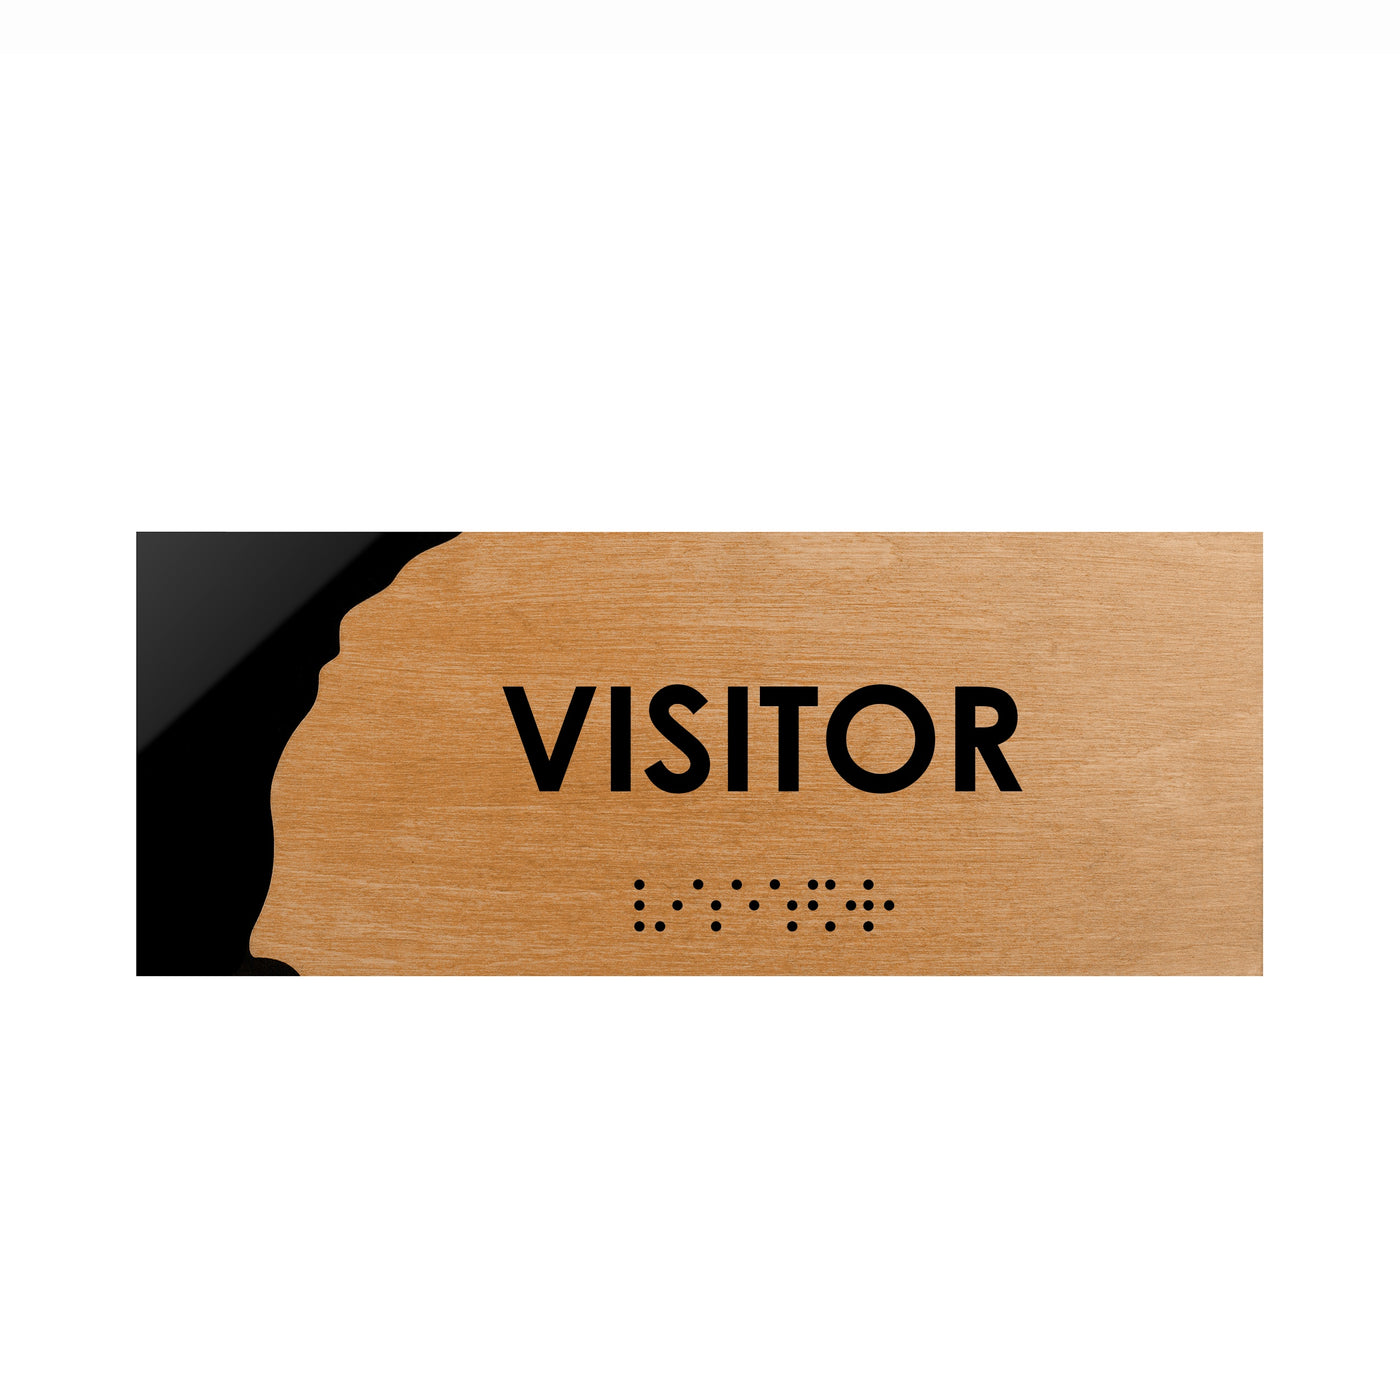 Door Signs - Visitor Wooden Door Plate "Sherwood" Design